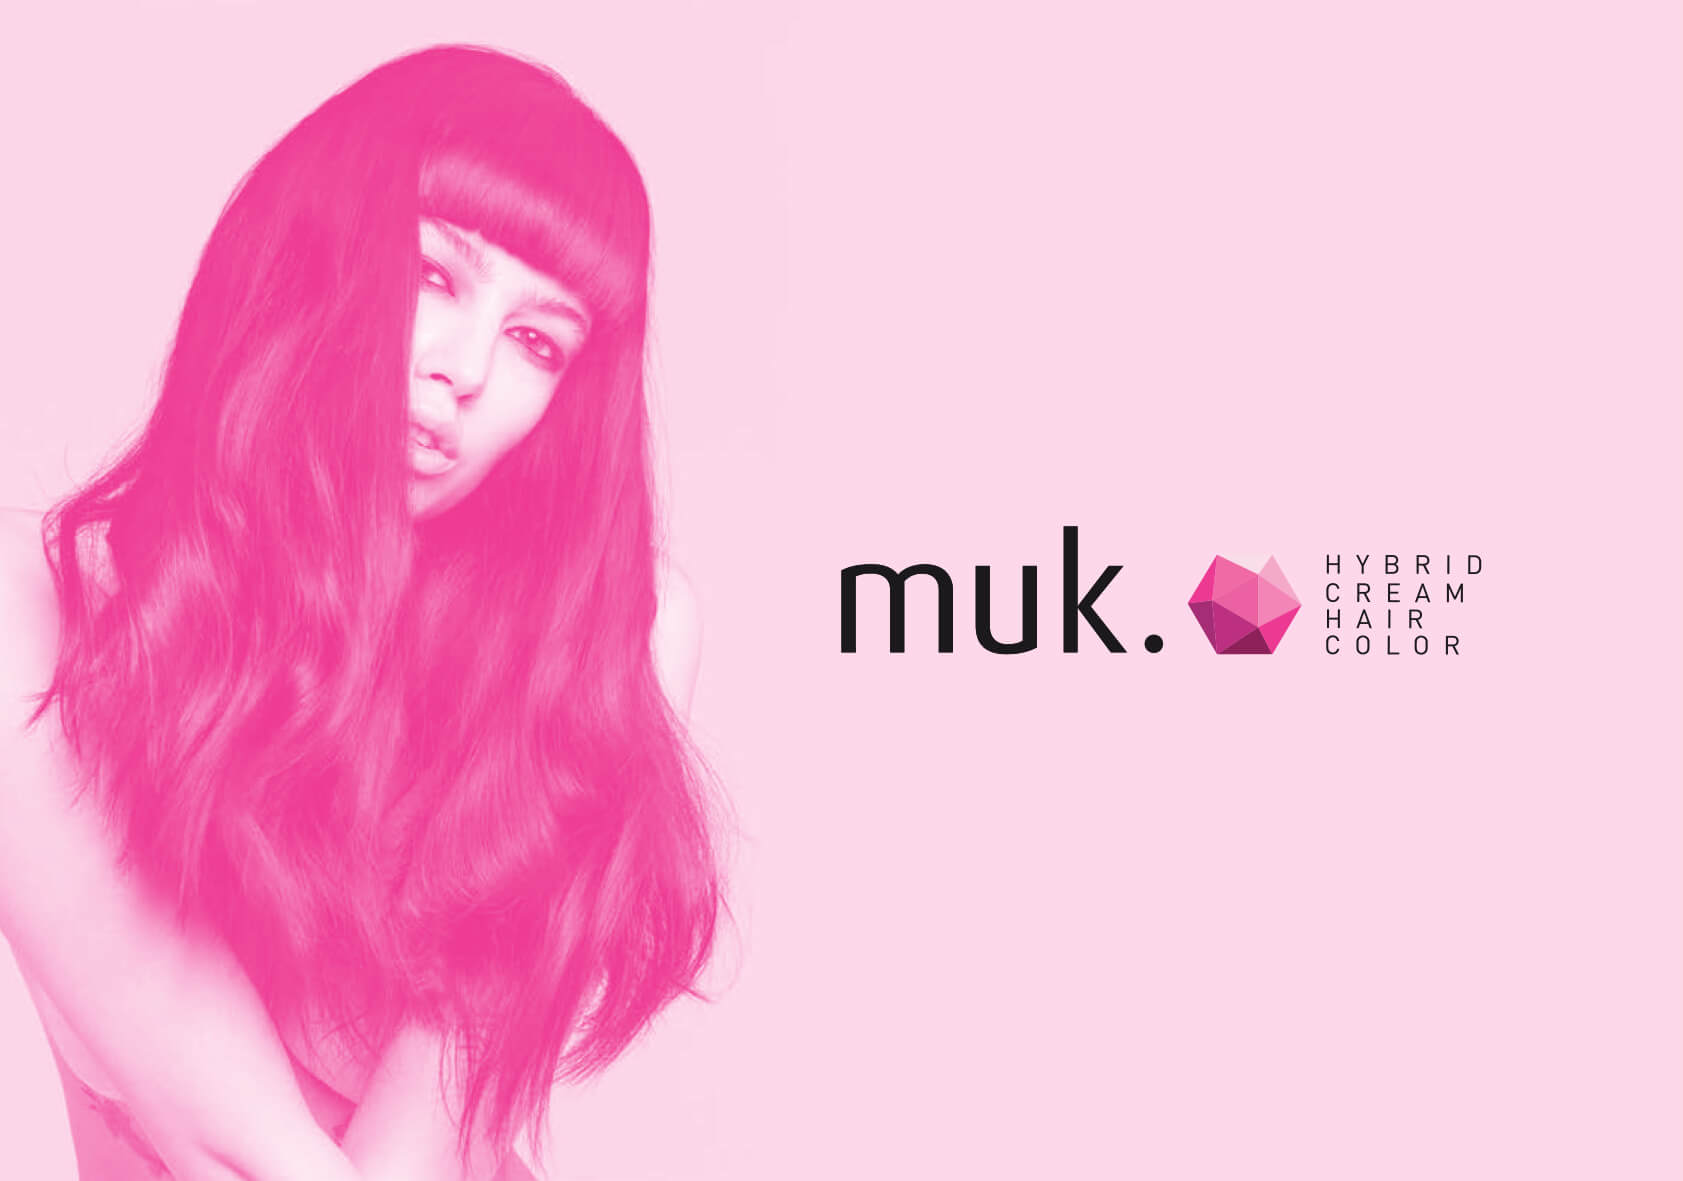 Muk Hair Colour Chart